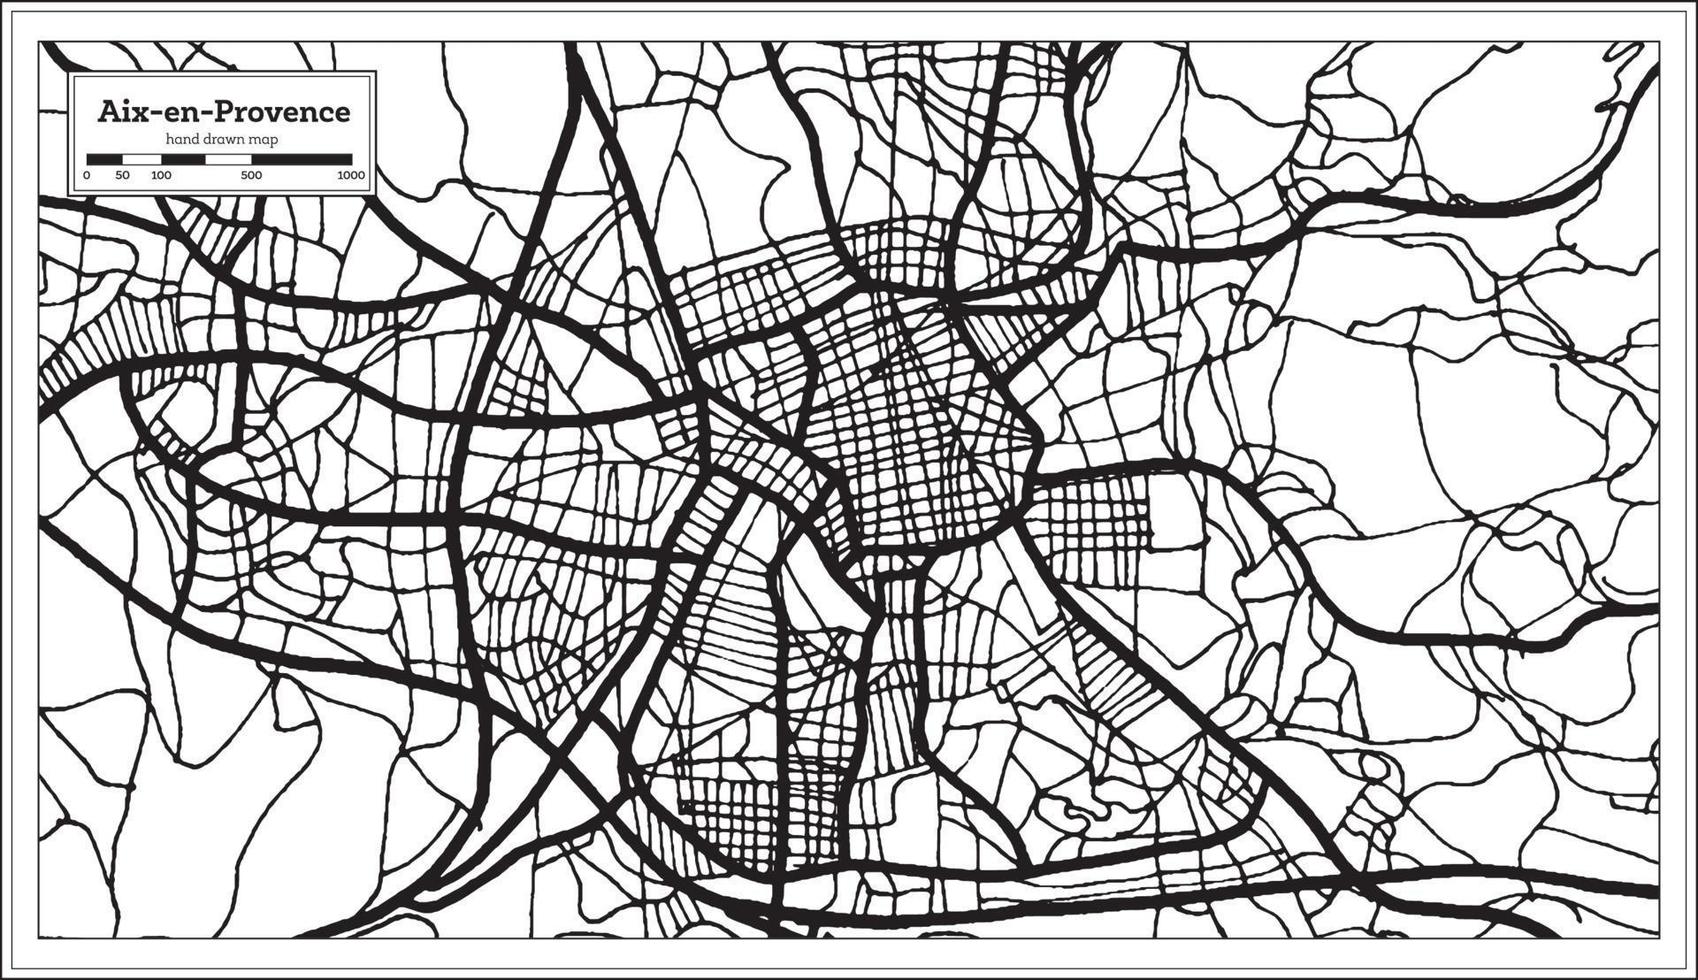 plan de la ville d'aix-en-provence france en noir et blanc dans un style rétro. carte muette. vecteur